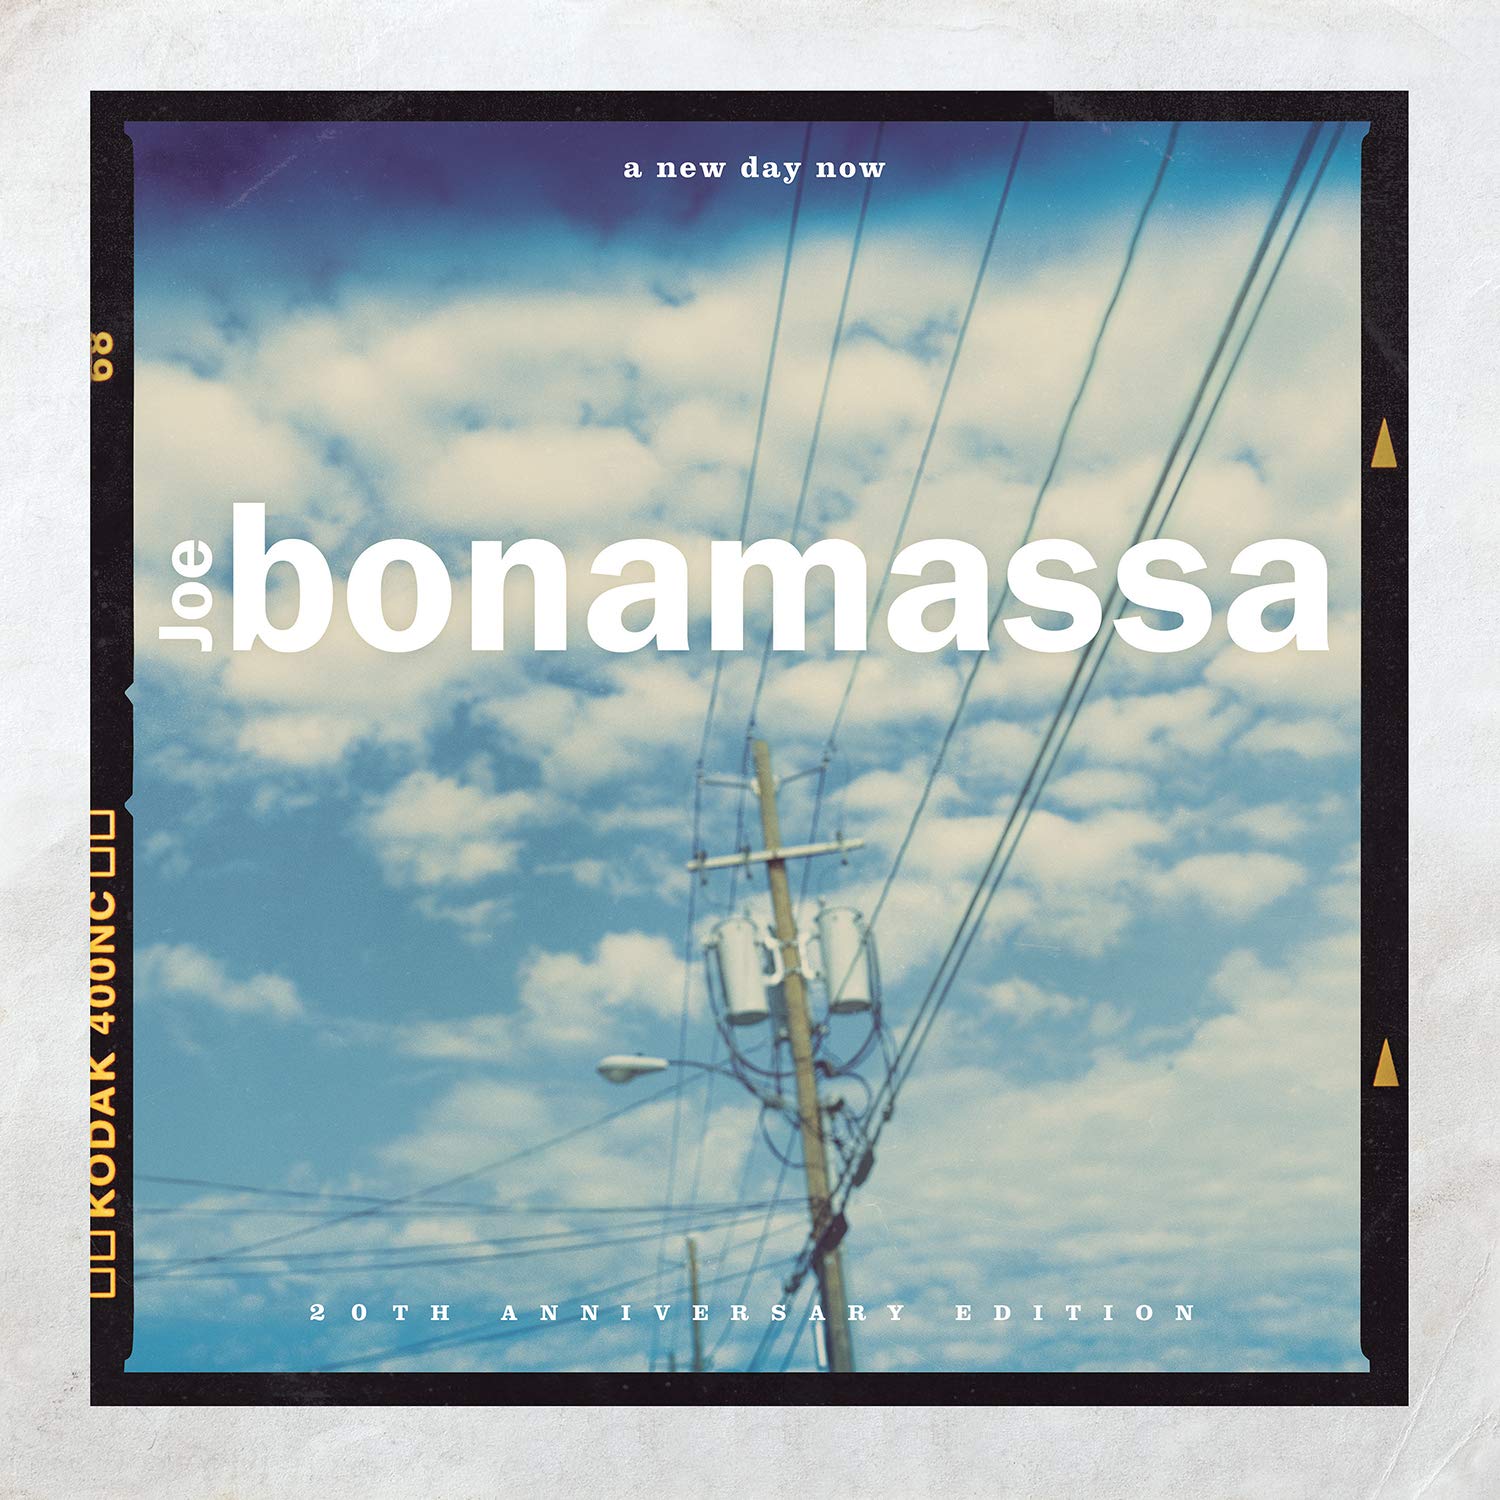 Joe Bonamassa - A New Day Now (Vinyl 2LP)